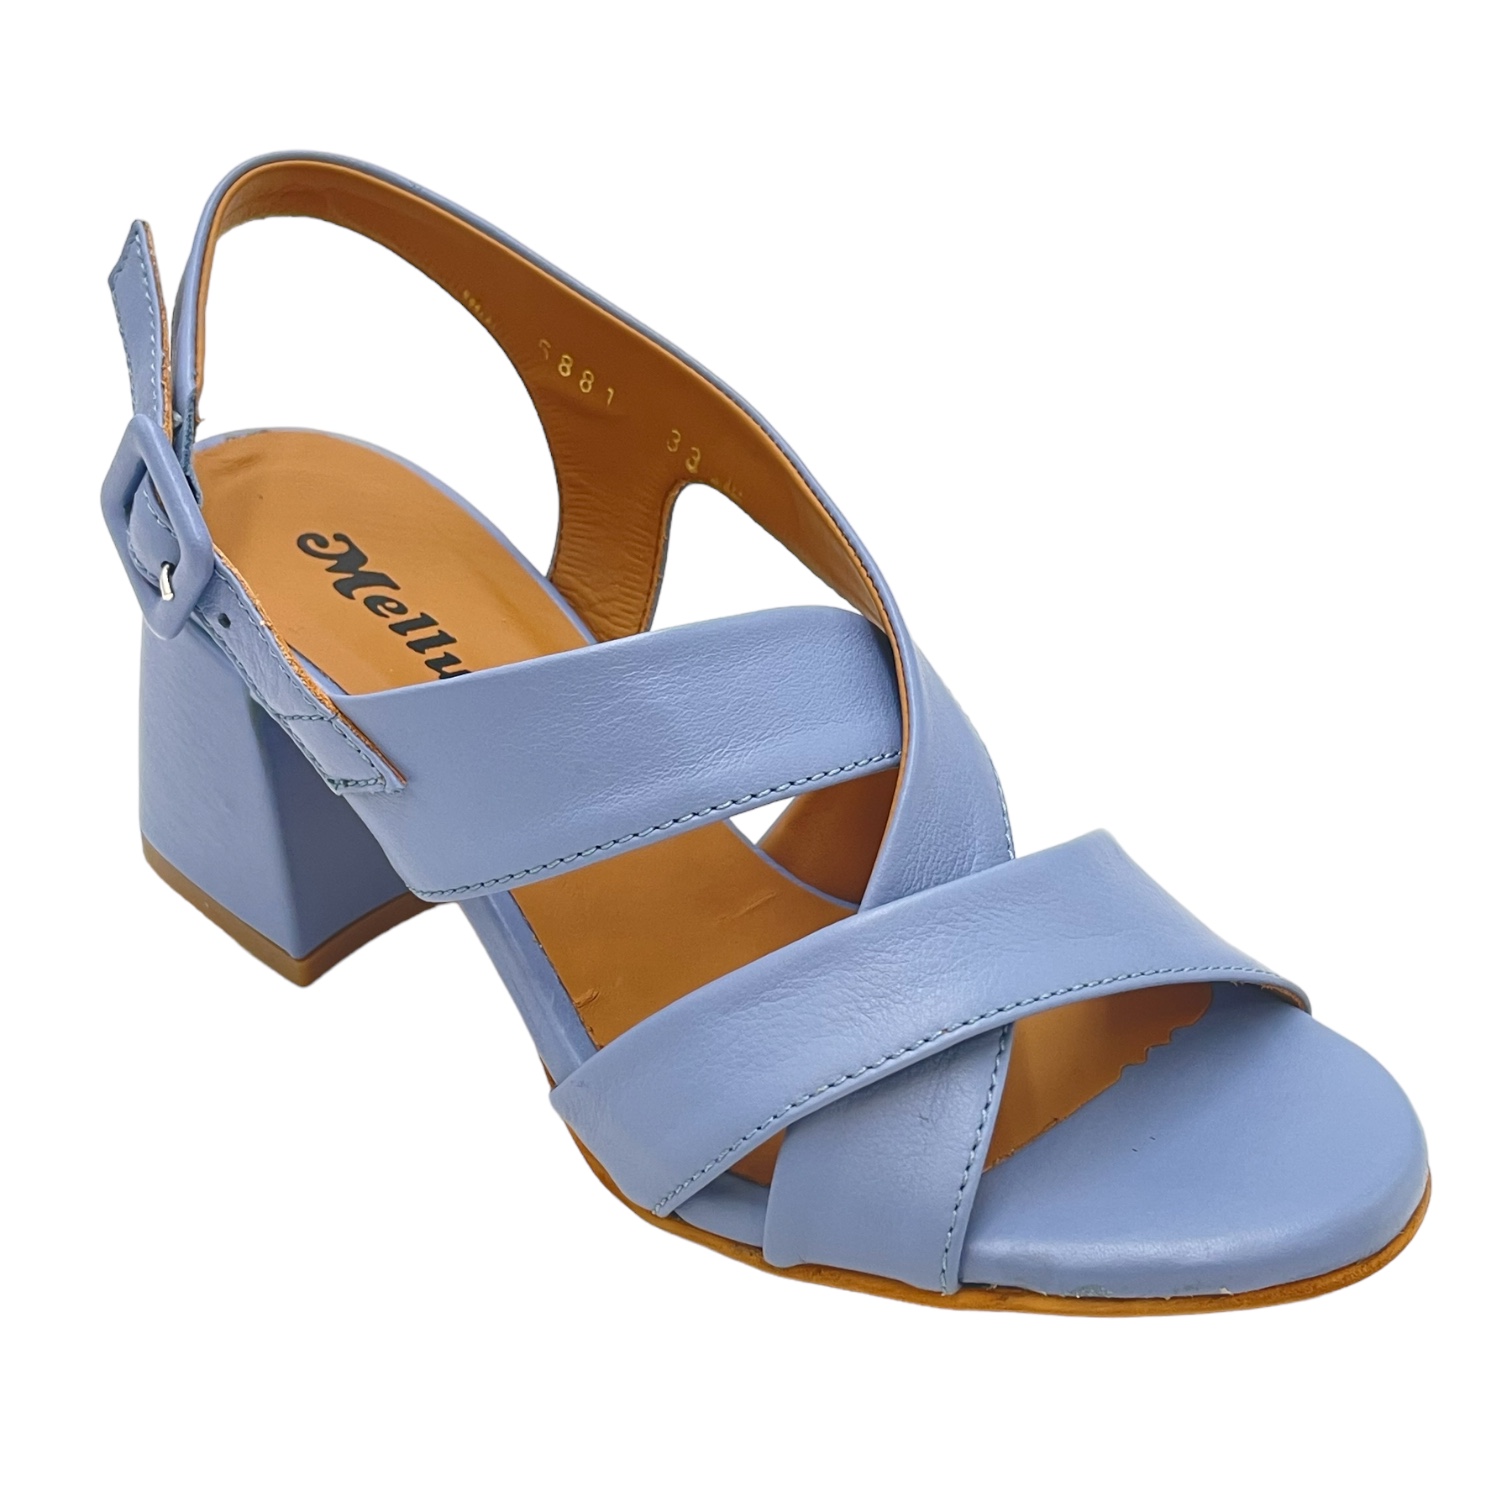 Sandali: MELLUSO sandali in pelle colore azzurro tacco medio 4-7 cm 33,34  donna made in italy numeri speciali